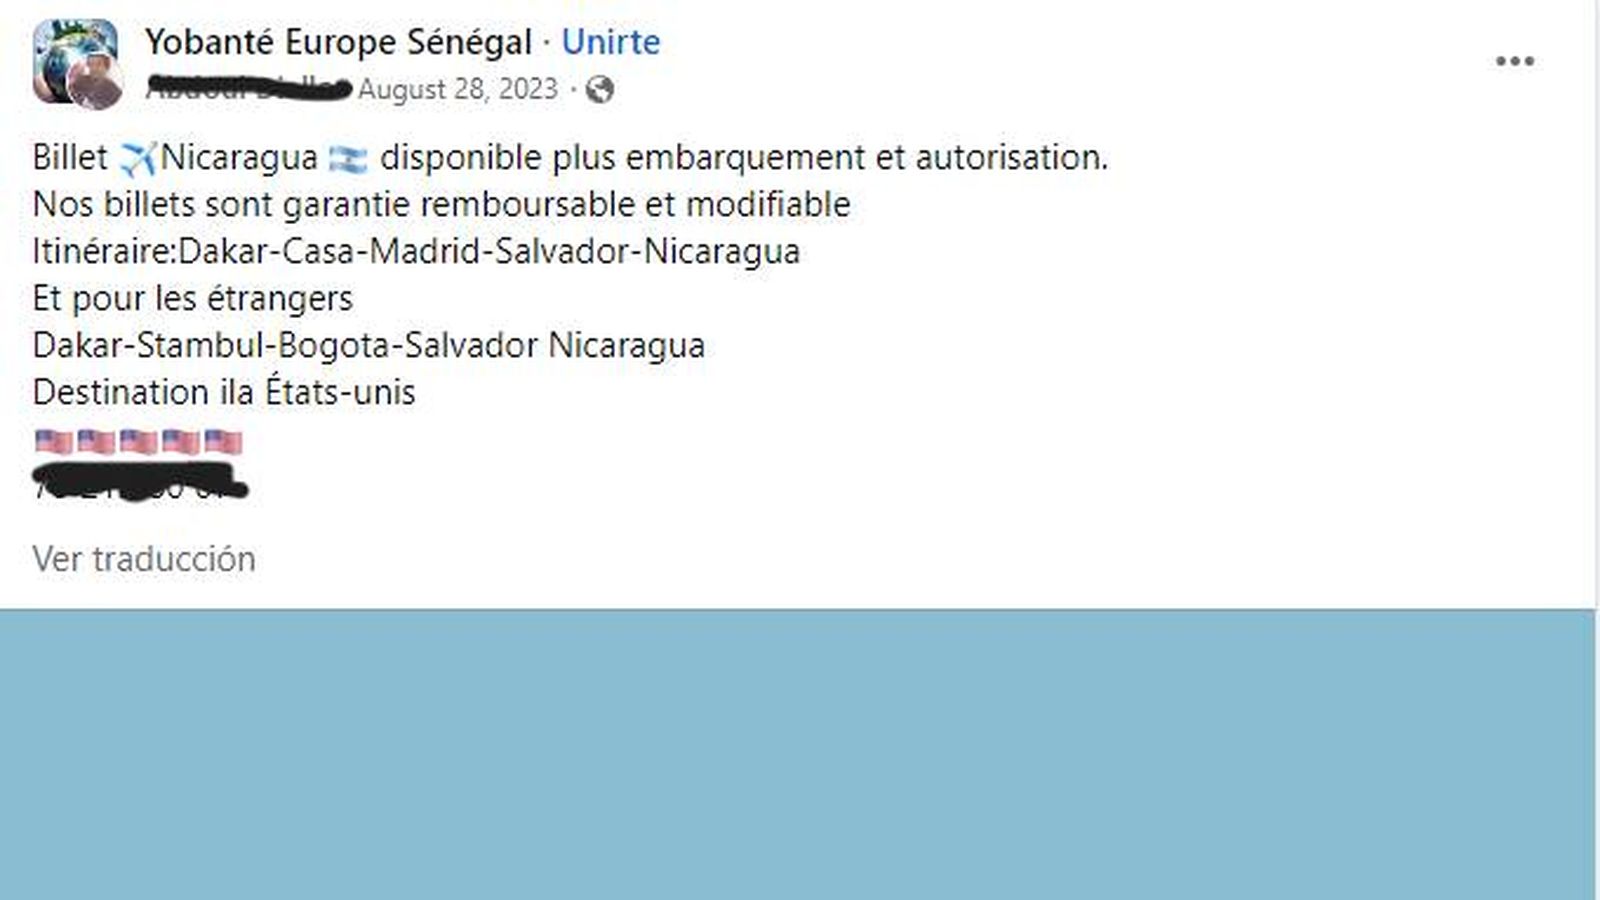 Oferta de viaje desde Senegal colgada en Facebook. Hay opciones para senegales o para extranjeros con visado de tránsito en España.